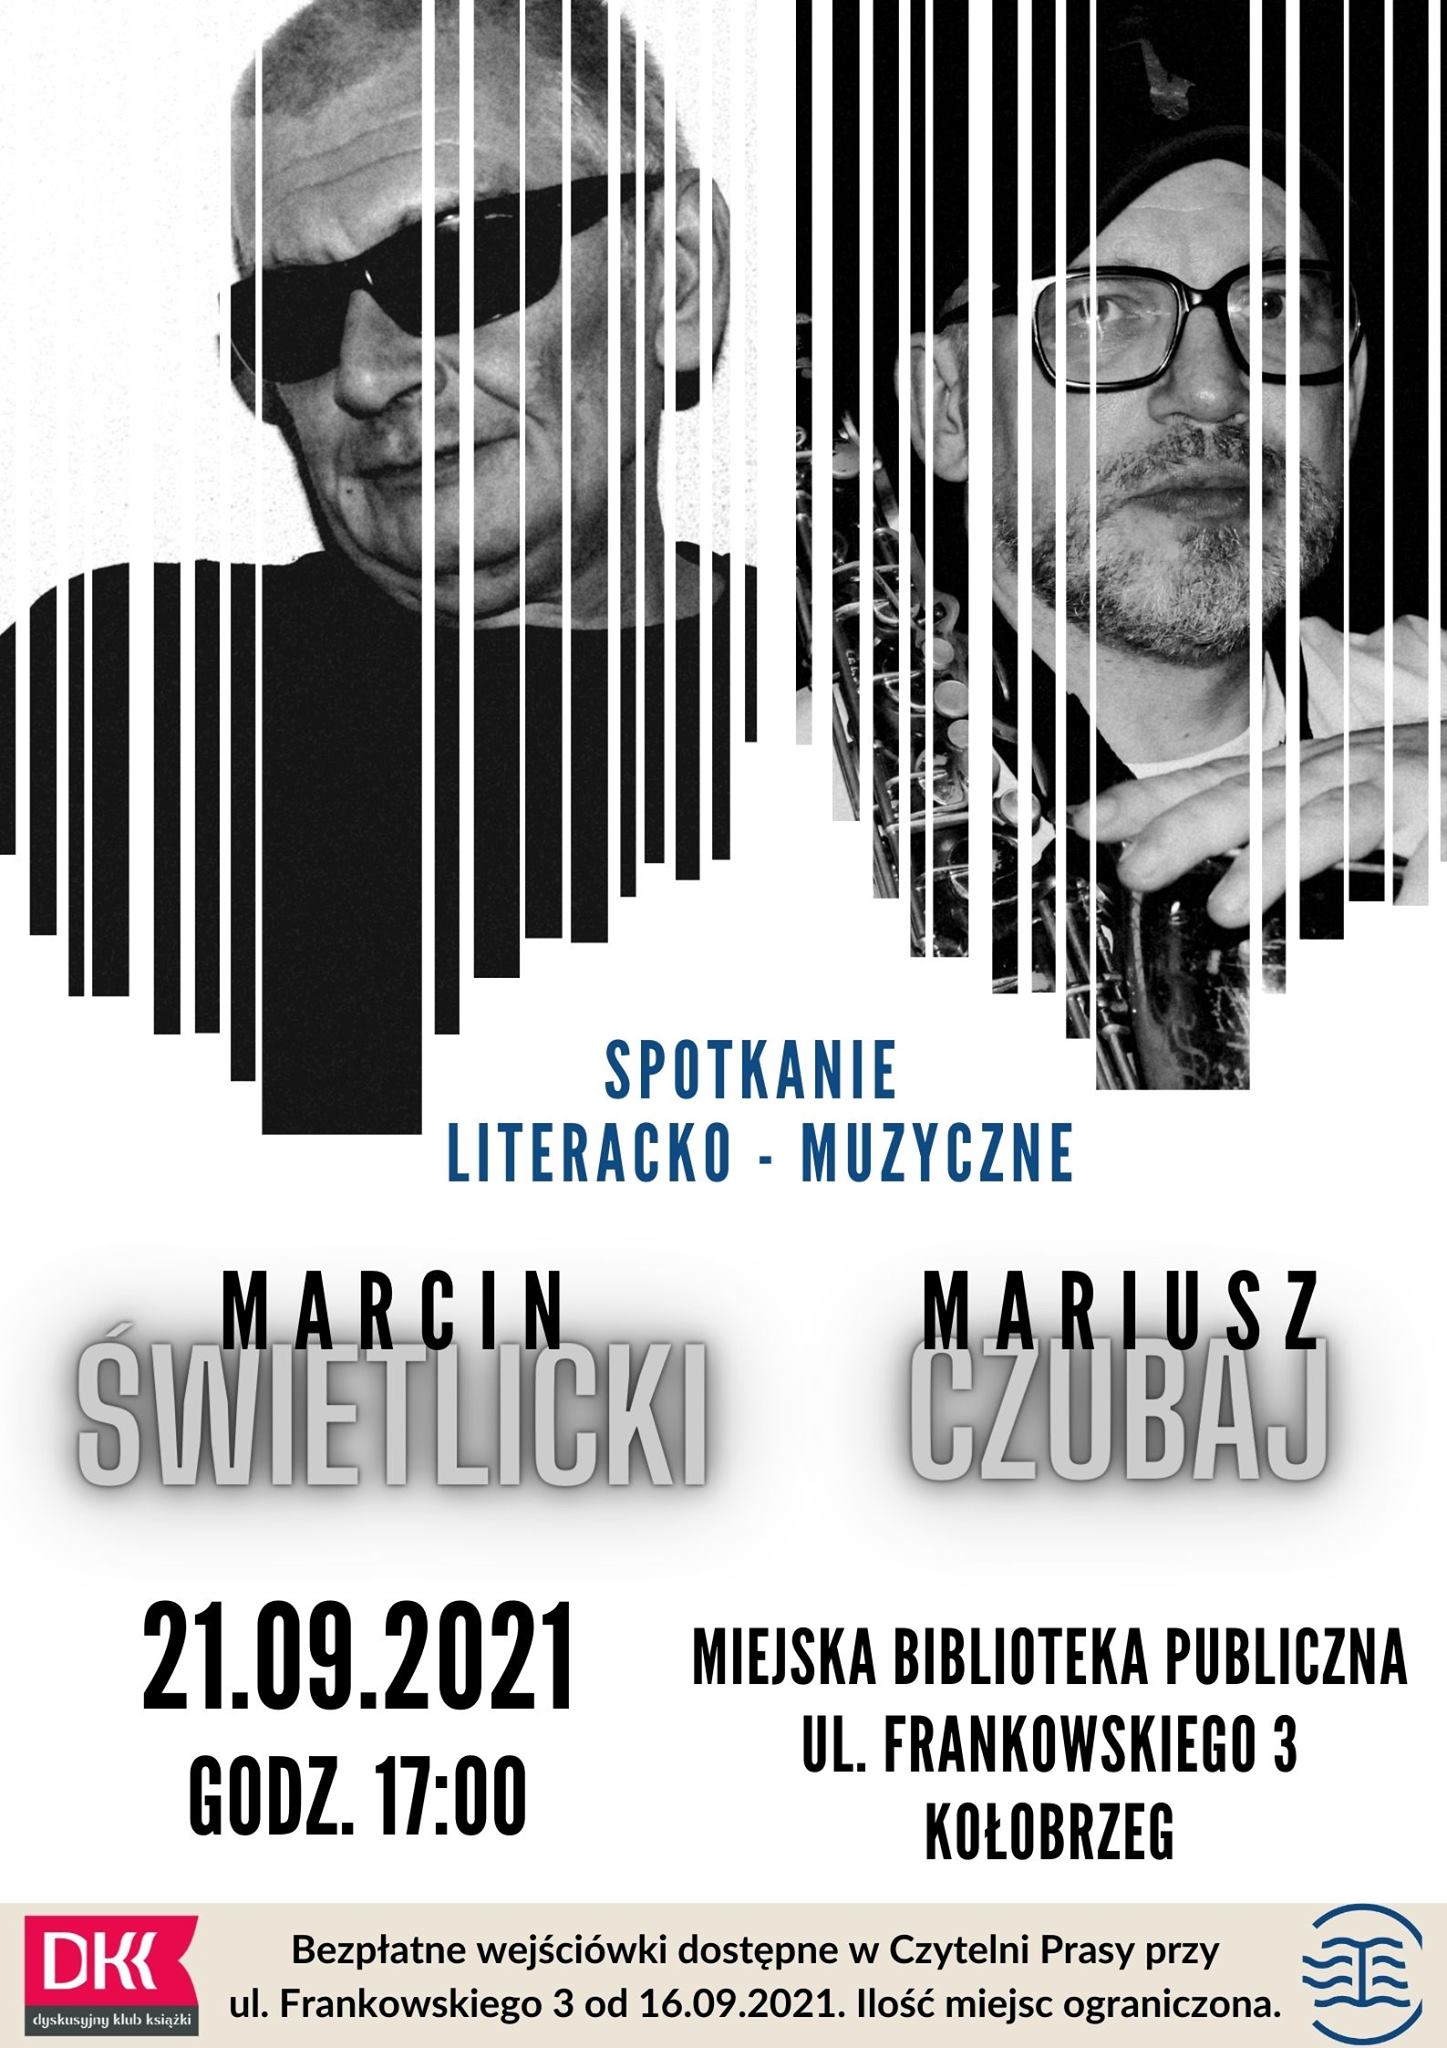 Spotkanie literacko - muzyczne z Marcinem Świetlickim i Mariuszem Czubajem